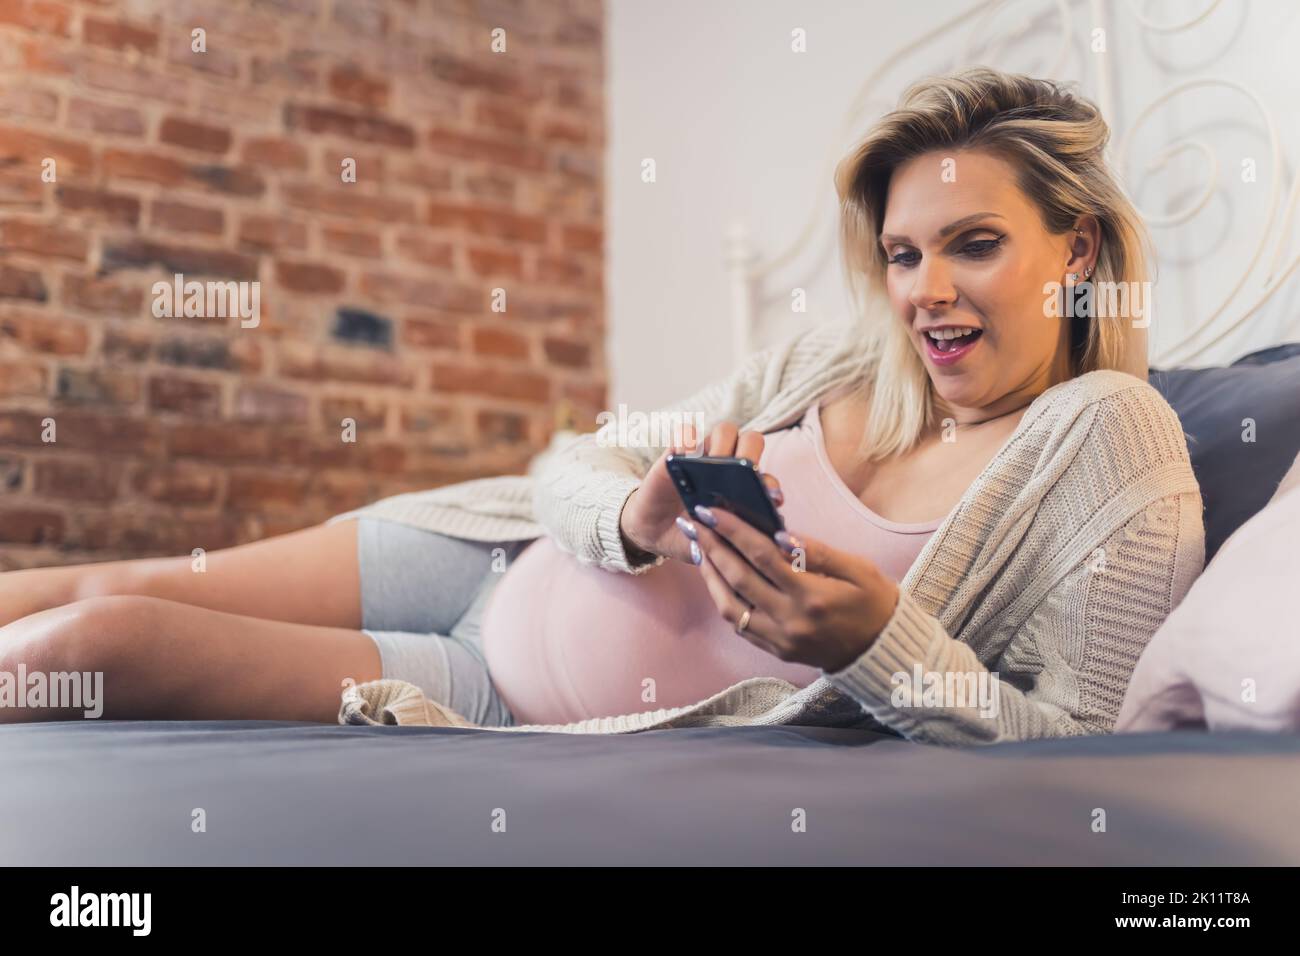 Giovane donna incinta che si rilassa a letto, guardando video divertenti sui social media tramite smartphone. Foto di alta qualità Foto Stock